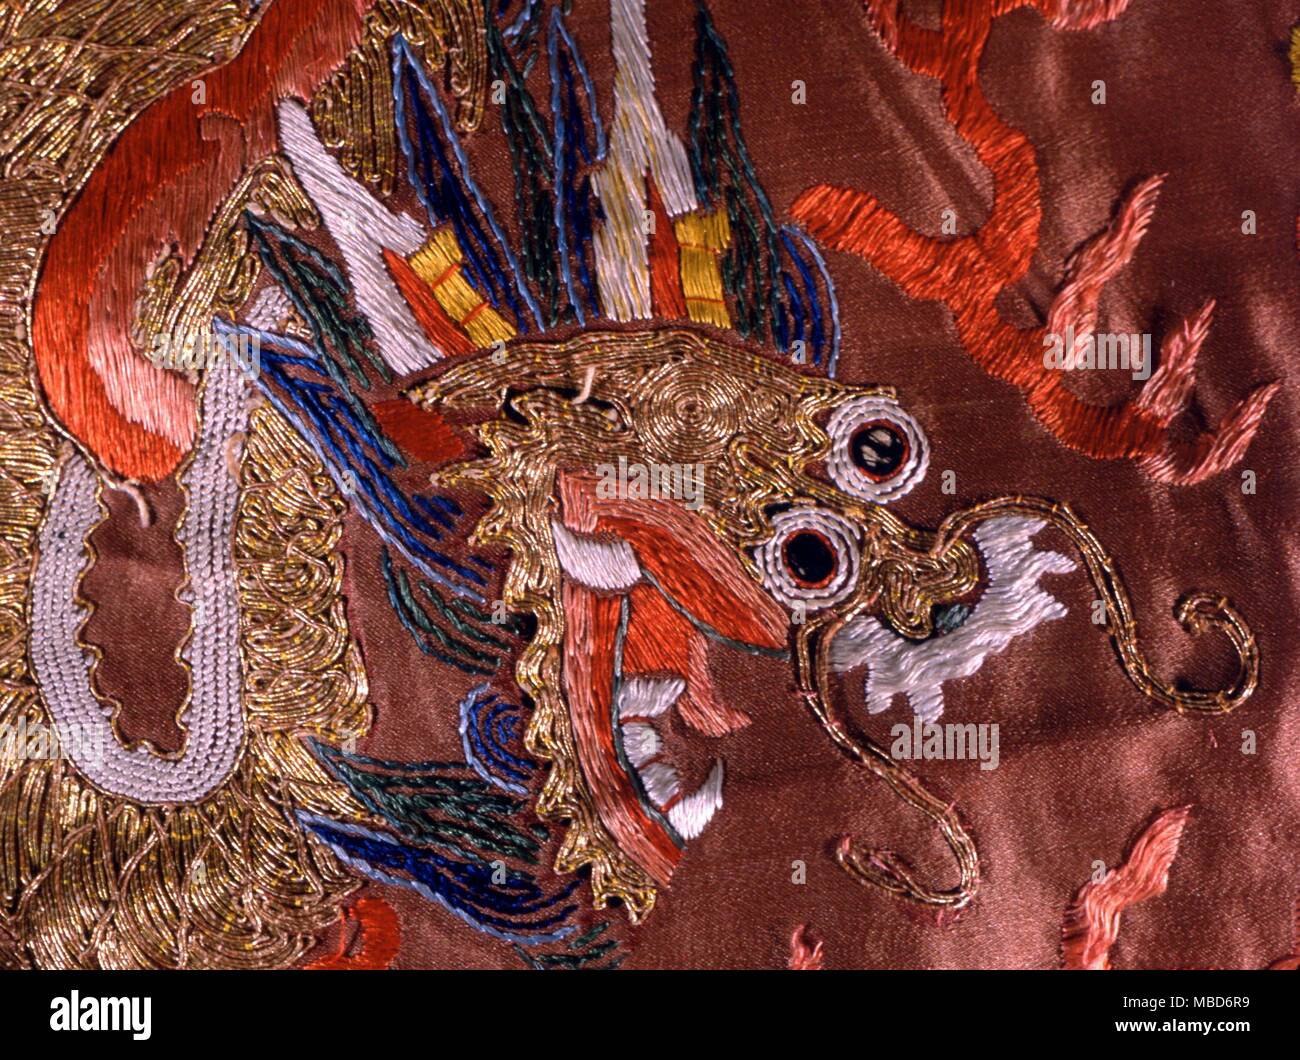 DRAGON - cabeza de dragón en un siglo xviii de seda bordada, antaño palacio manto. Colección privada. Foto de stock